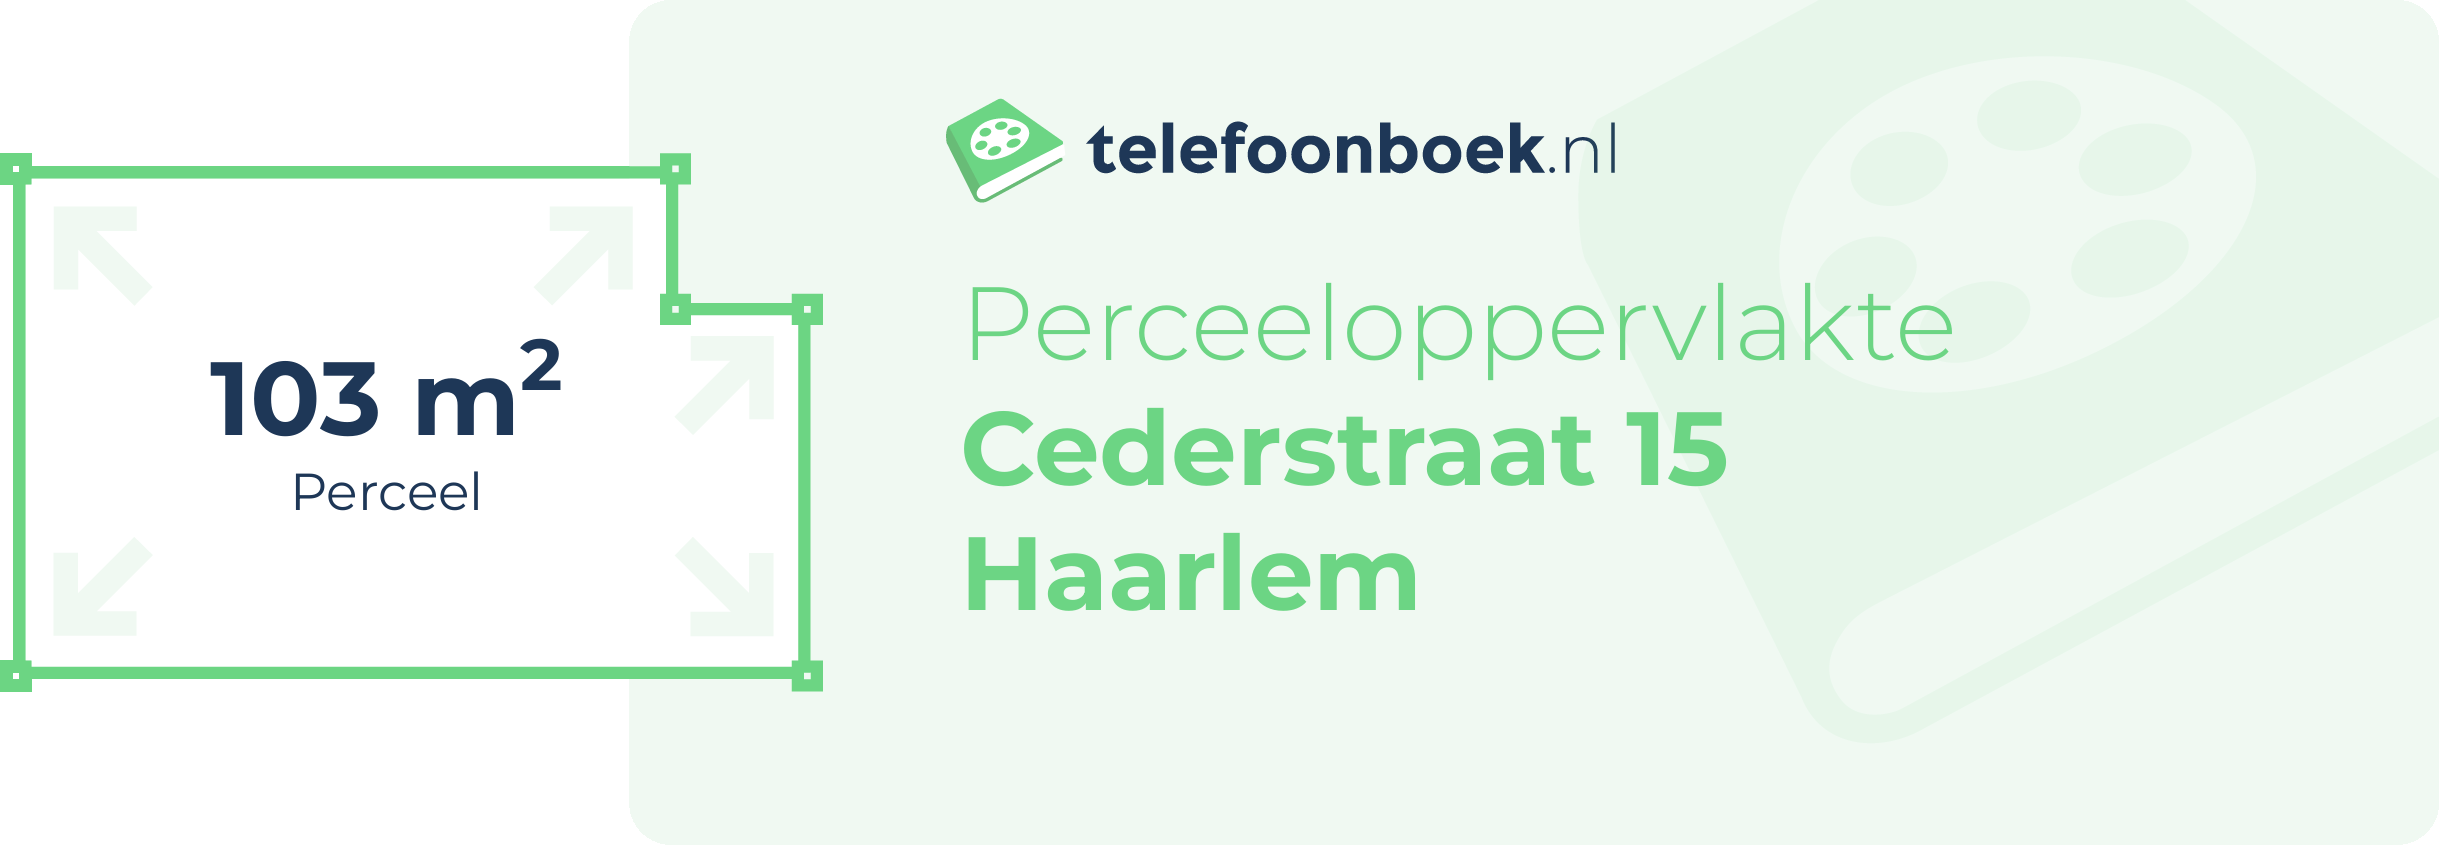 Perceeloppervlakte Cederstraat 15 Haarlem